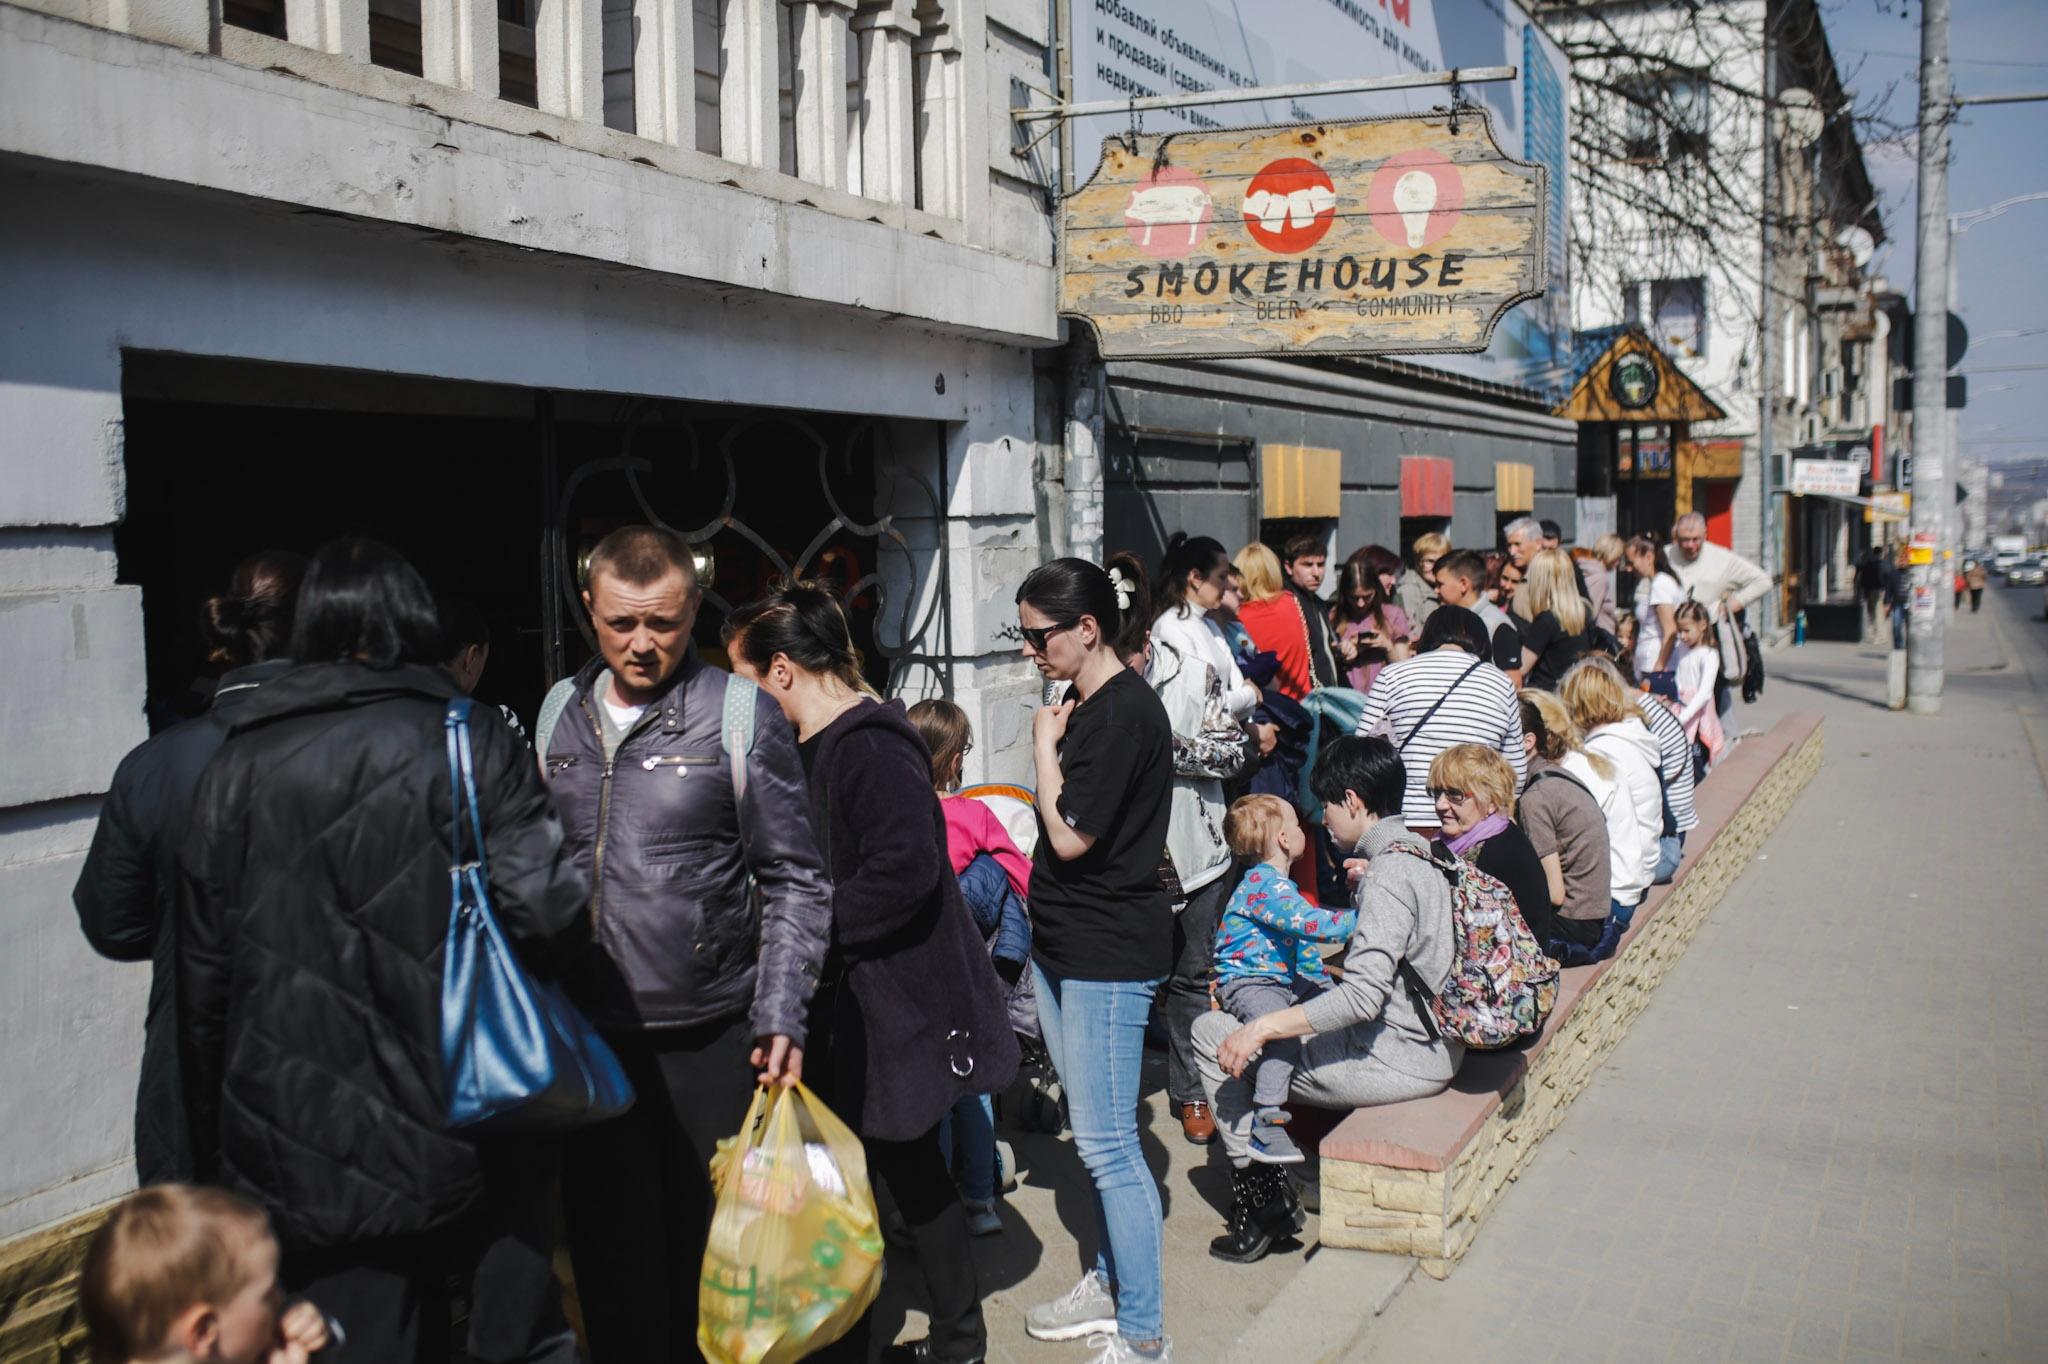 Anadolu/Getty - Bar/restaurant shelter in Chisinau